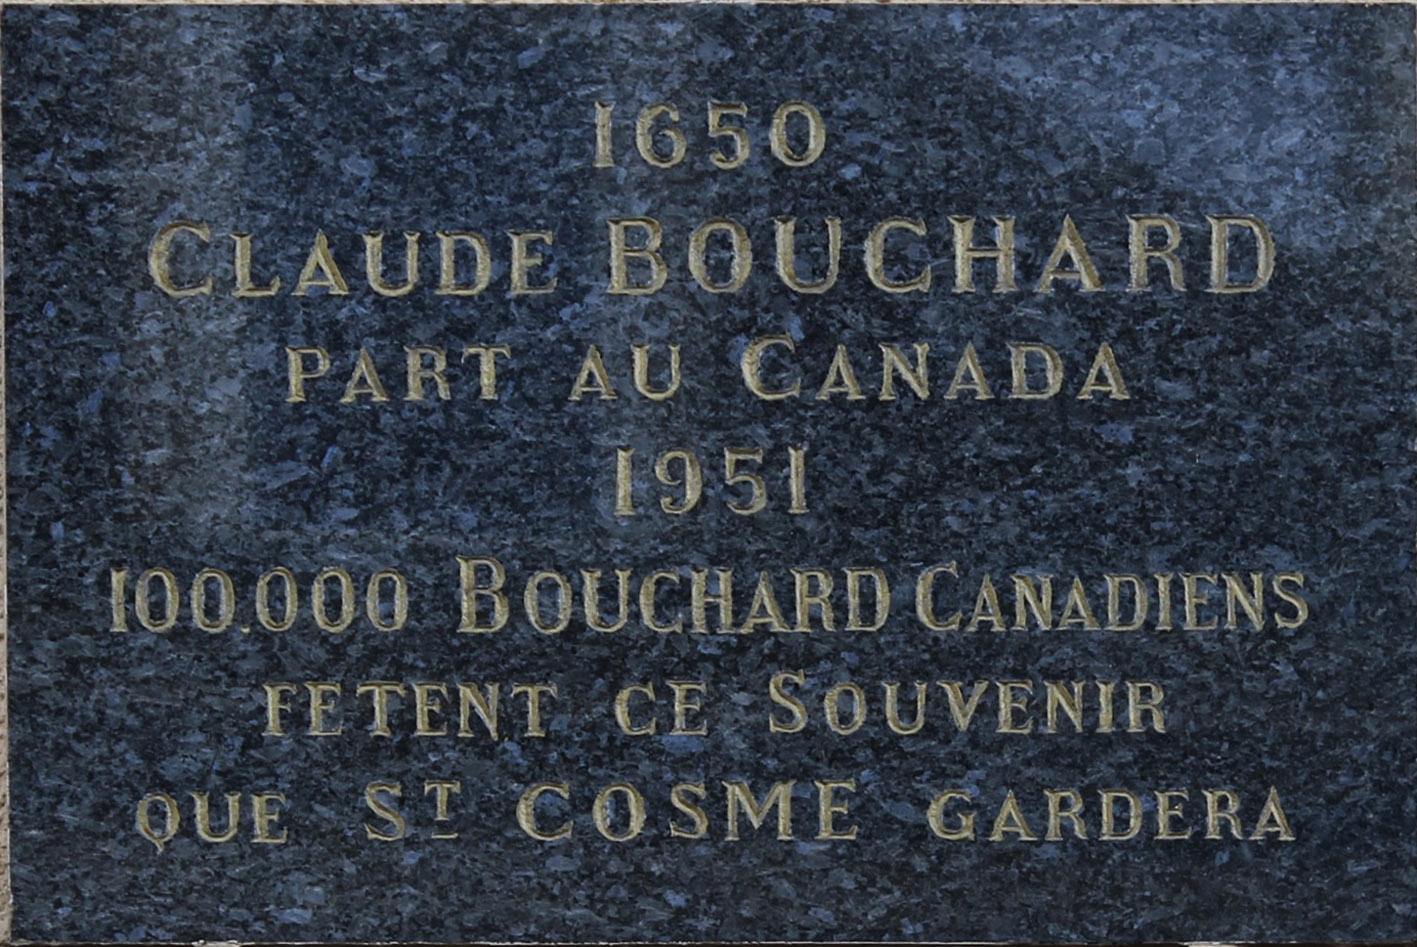 Commemorative plaque in Saint-Cosme-en-Vairais